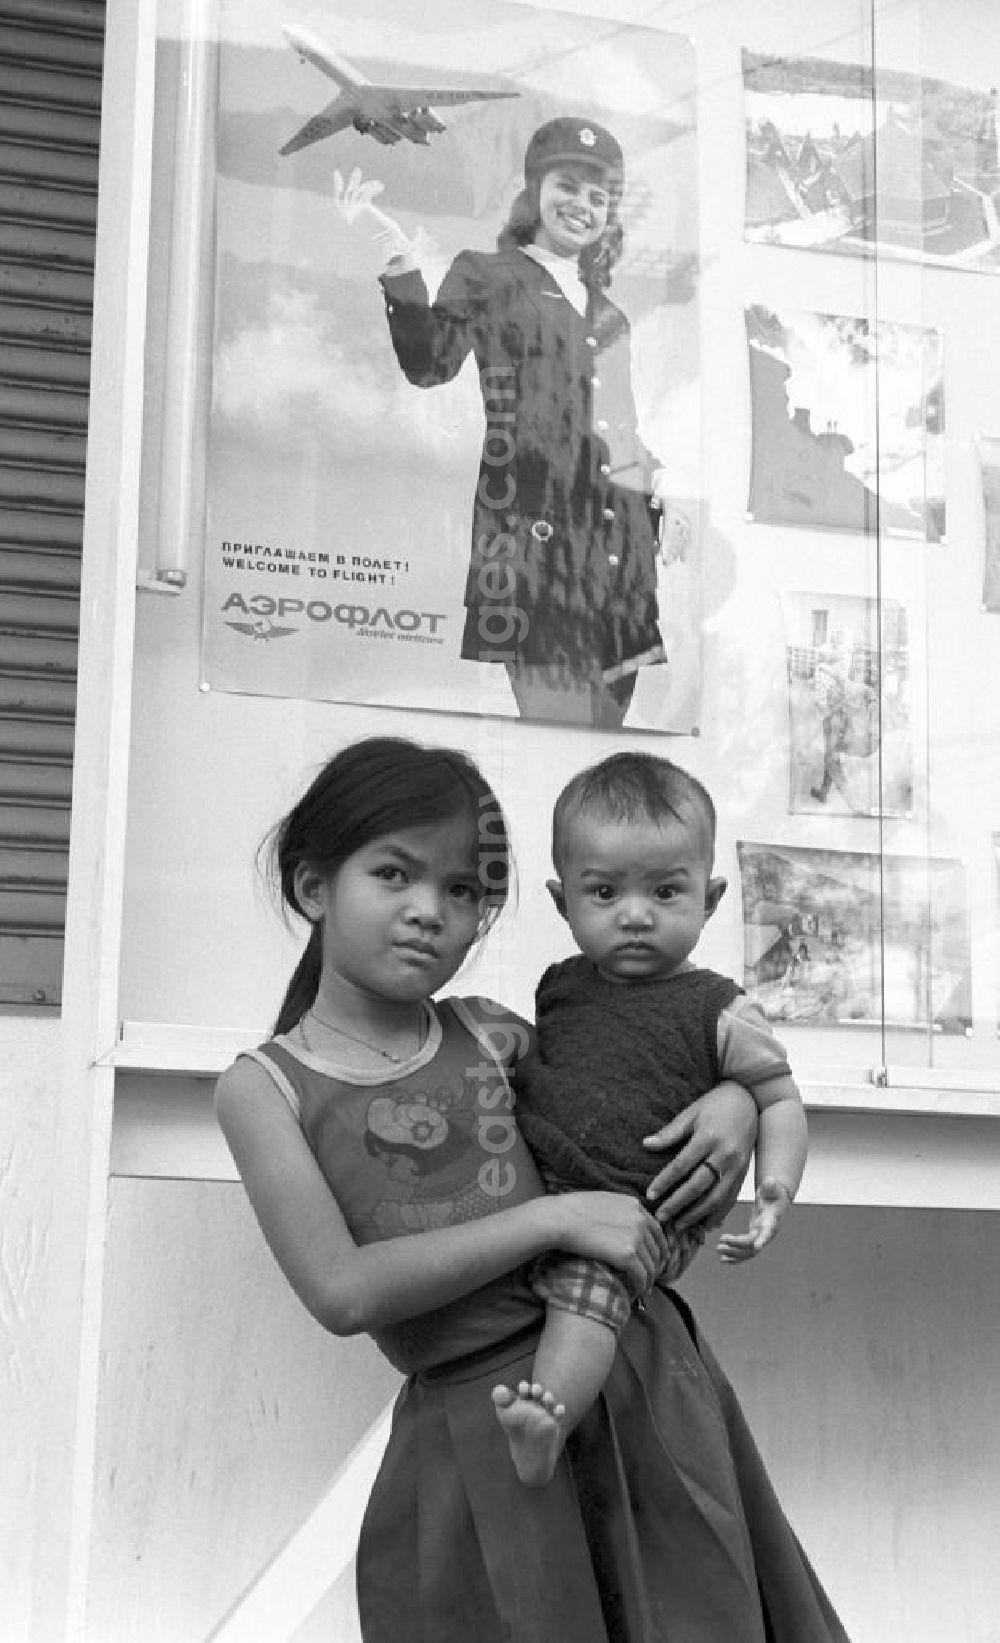 GDR image archive: Vientiane - Ein Mädchen steht mit einem Baby auf dem Arm vor einem Werbeplakat der russischen Fluggesellschaft Aeroflot in Vientiane in der Demokratischen Volksrepublik Laos.